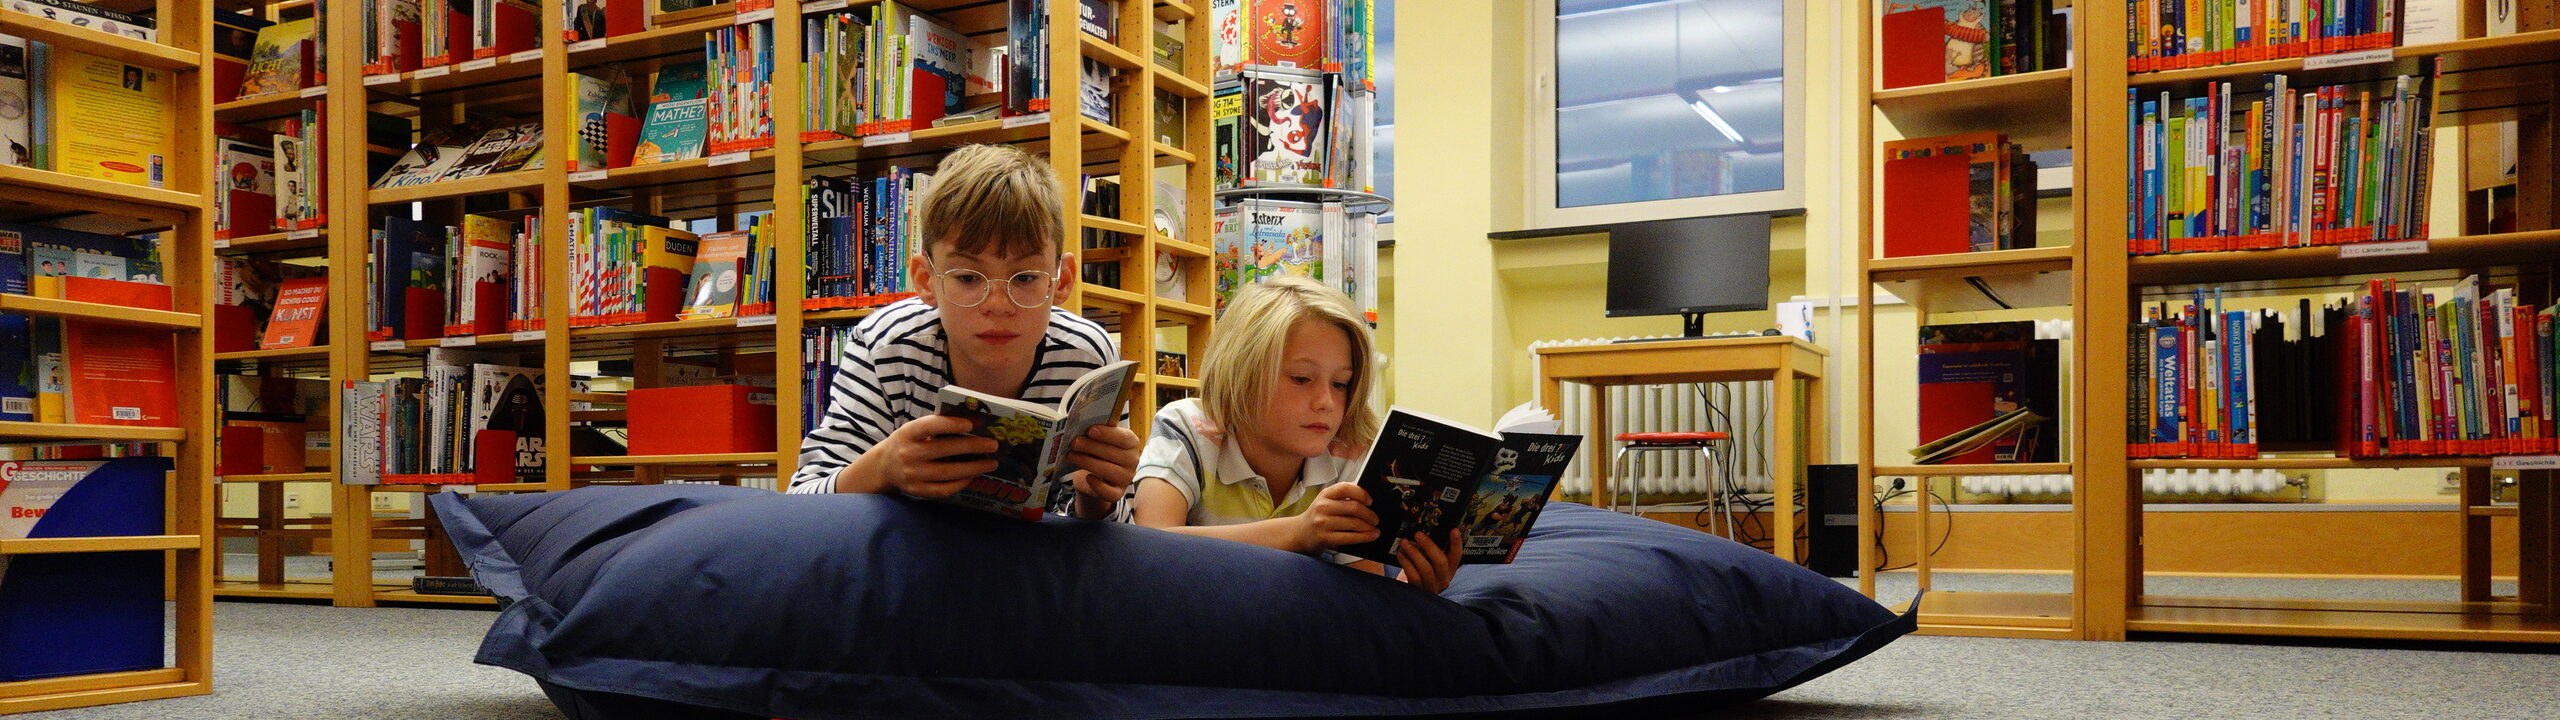 Zwei Jungen liegen mit Büchern in der Hand auf einem Sitzsack in der Kinder- und Jugendbücherei